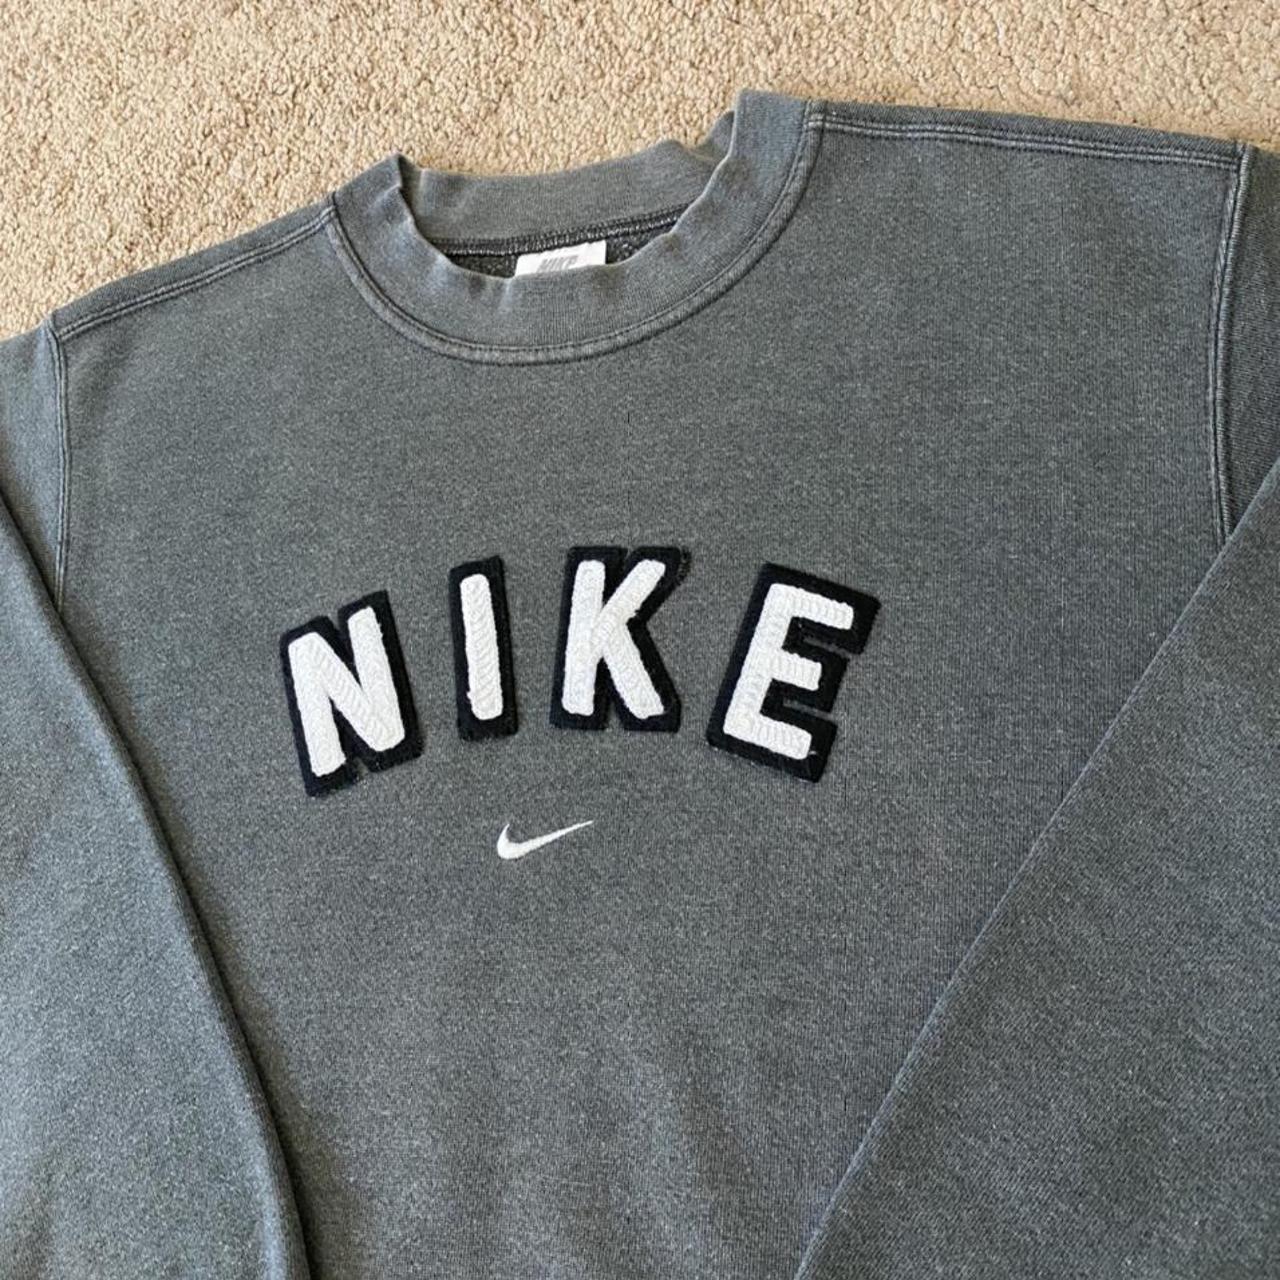 Vintage Nike Sweatshirt Spell Out Jumper. In good... - Depop